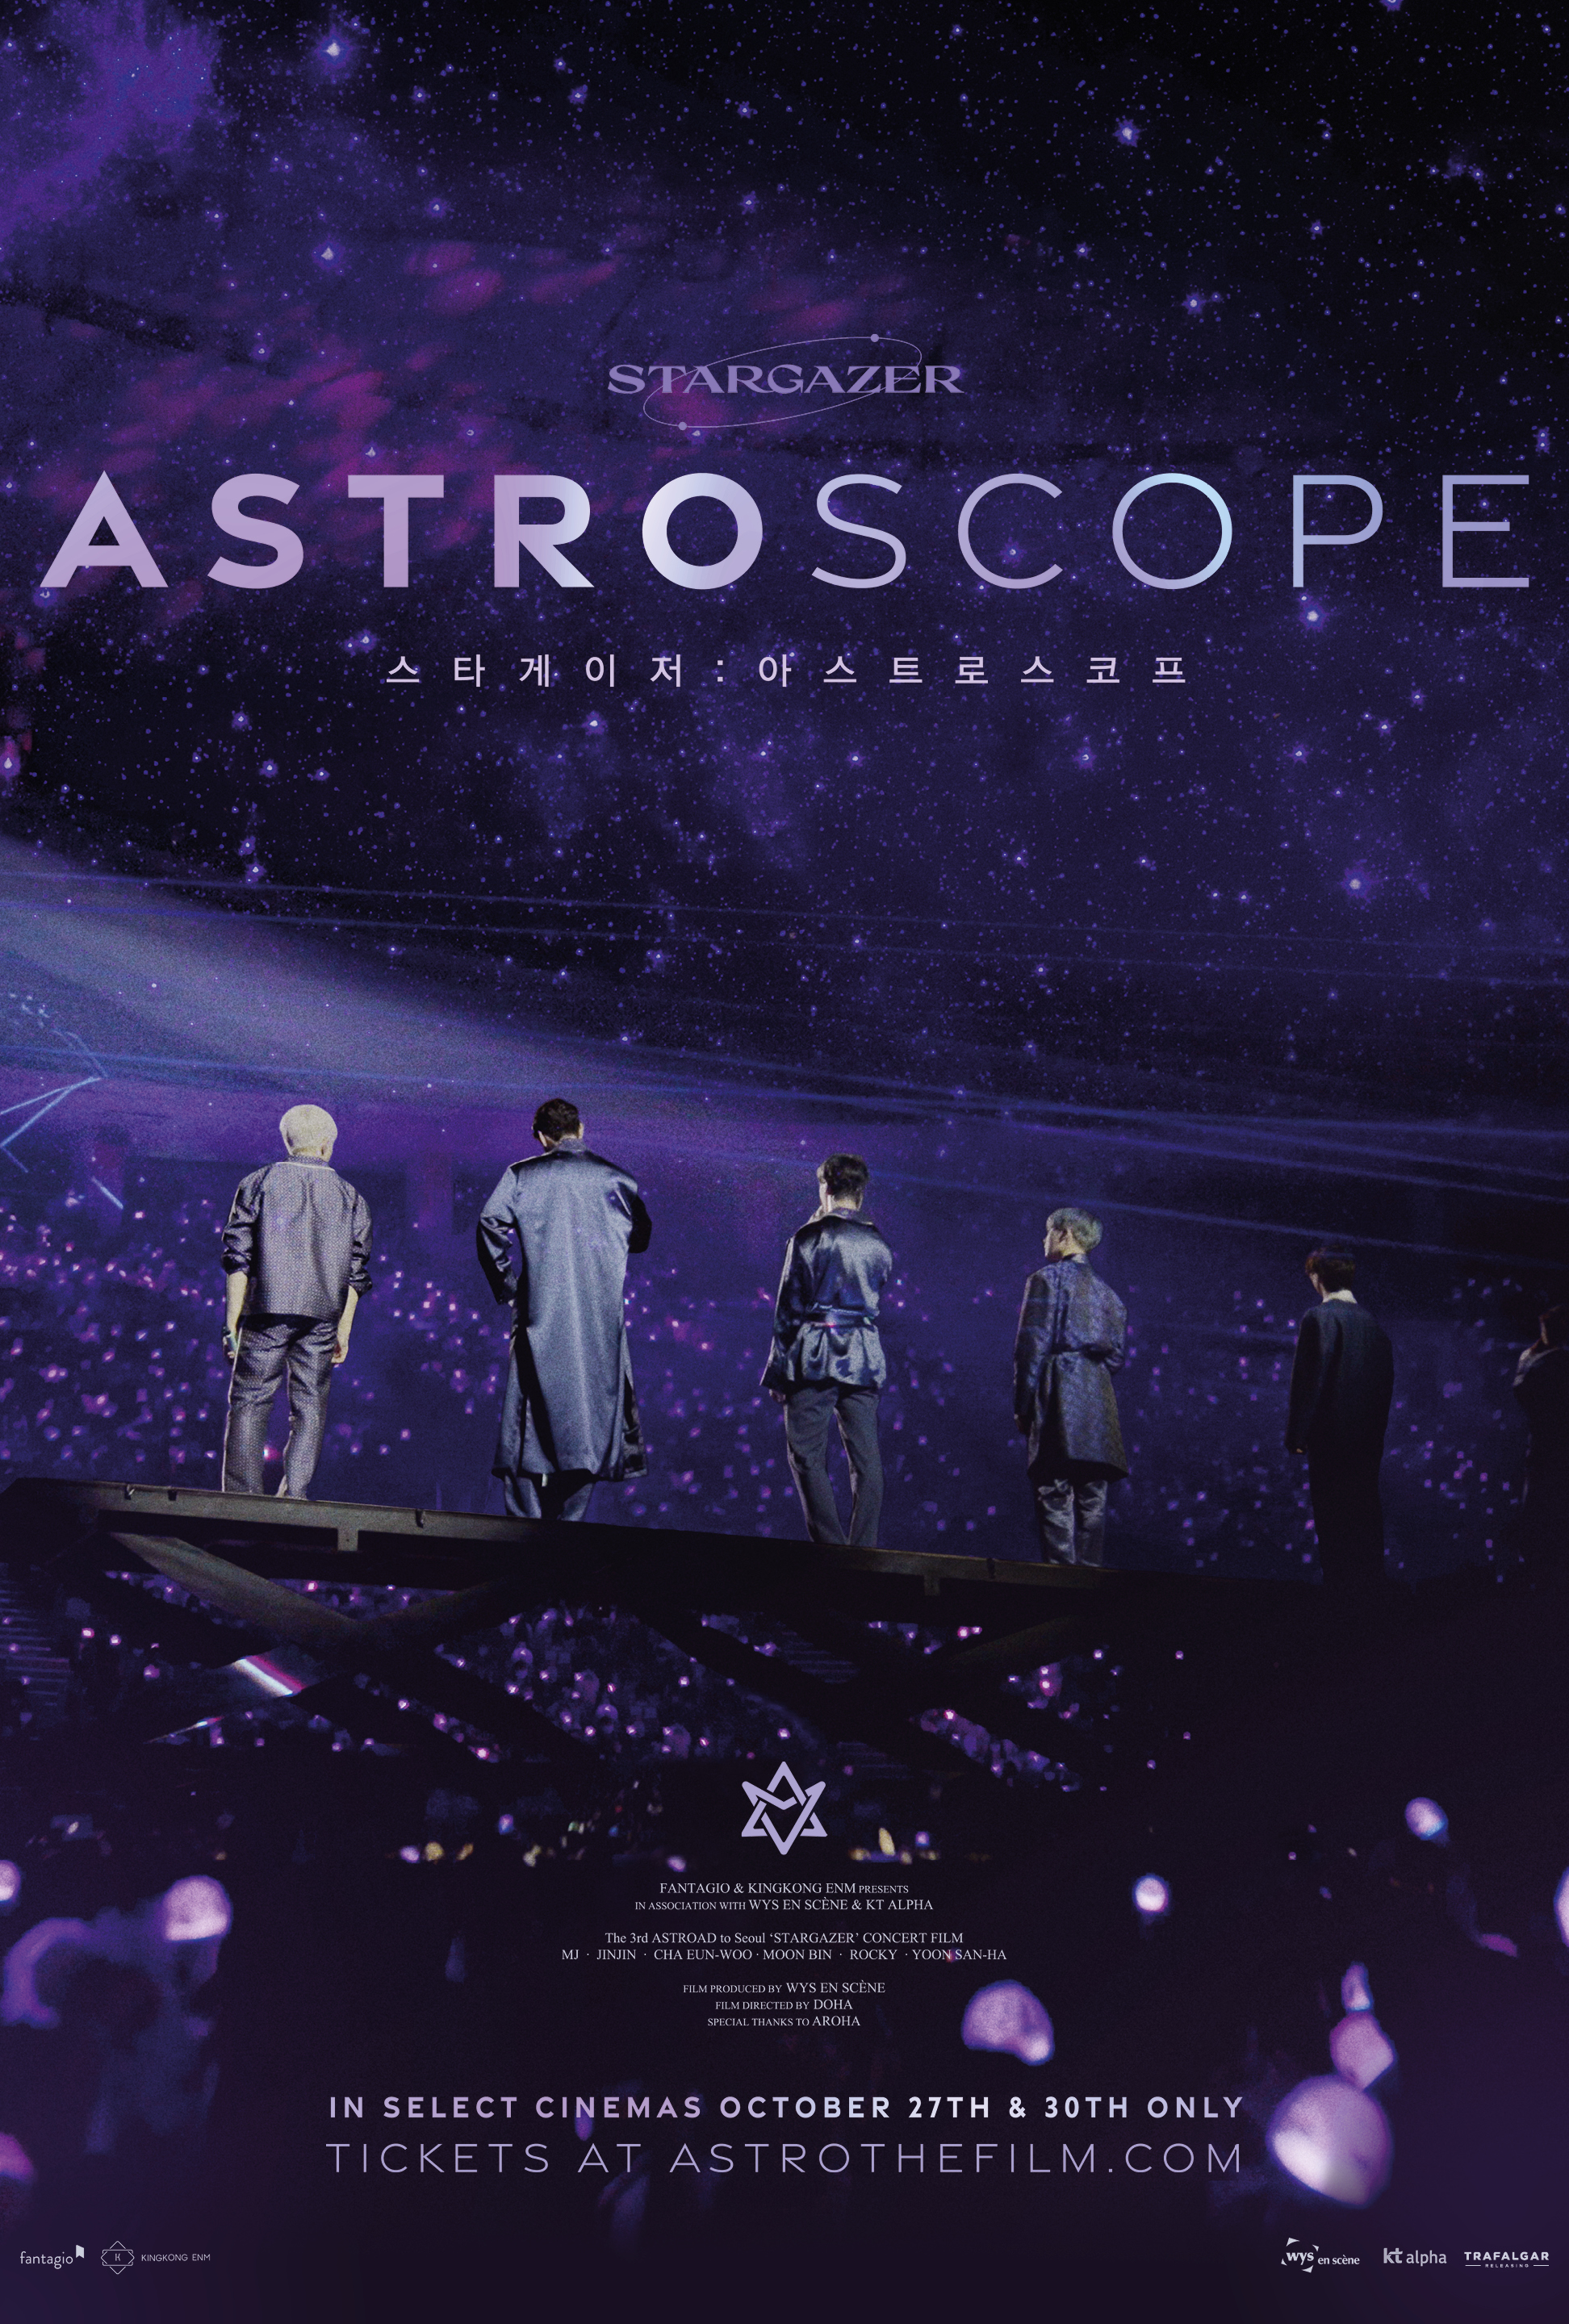 Astro - Stargazer: Astroscope at an AMC Theatre near you.